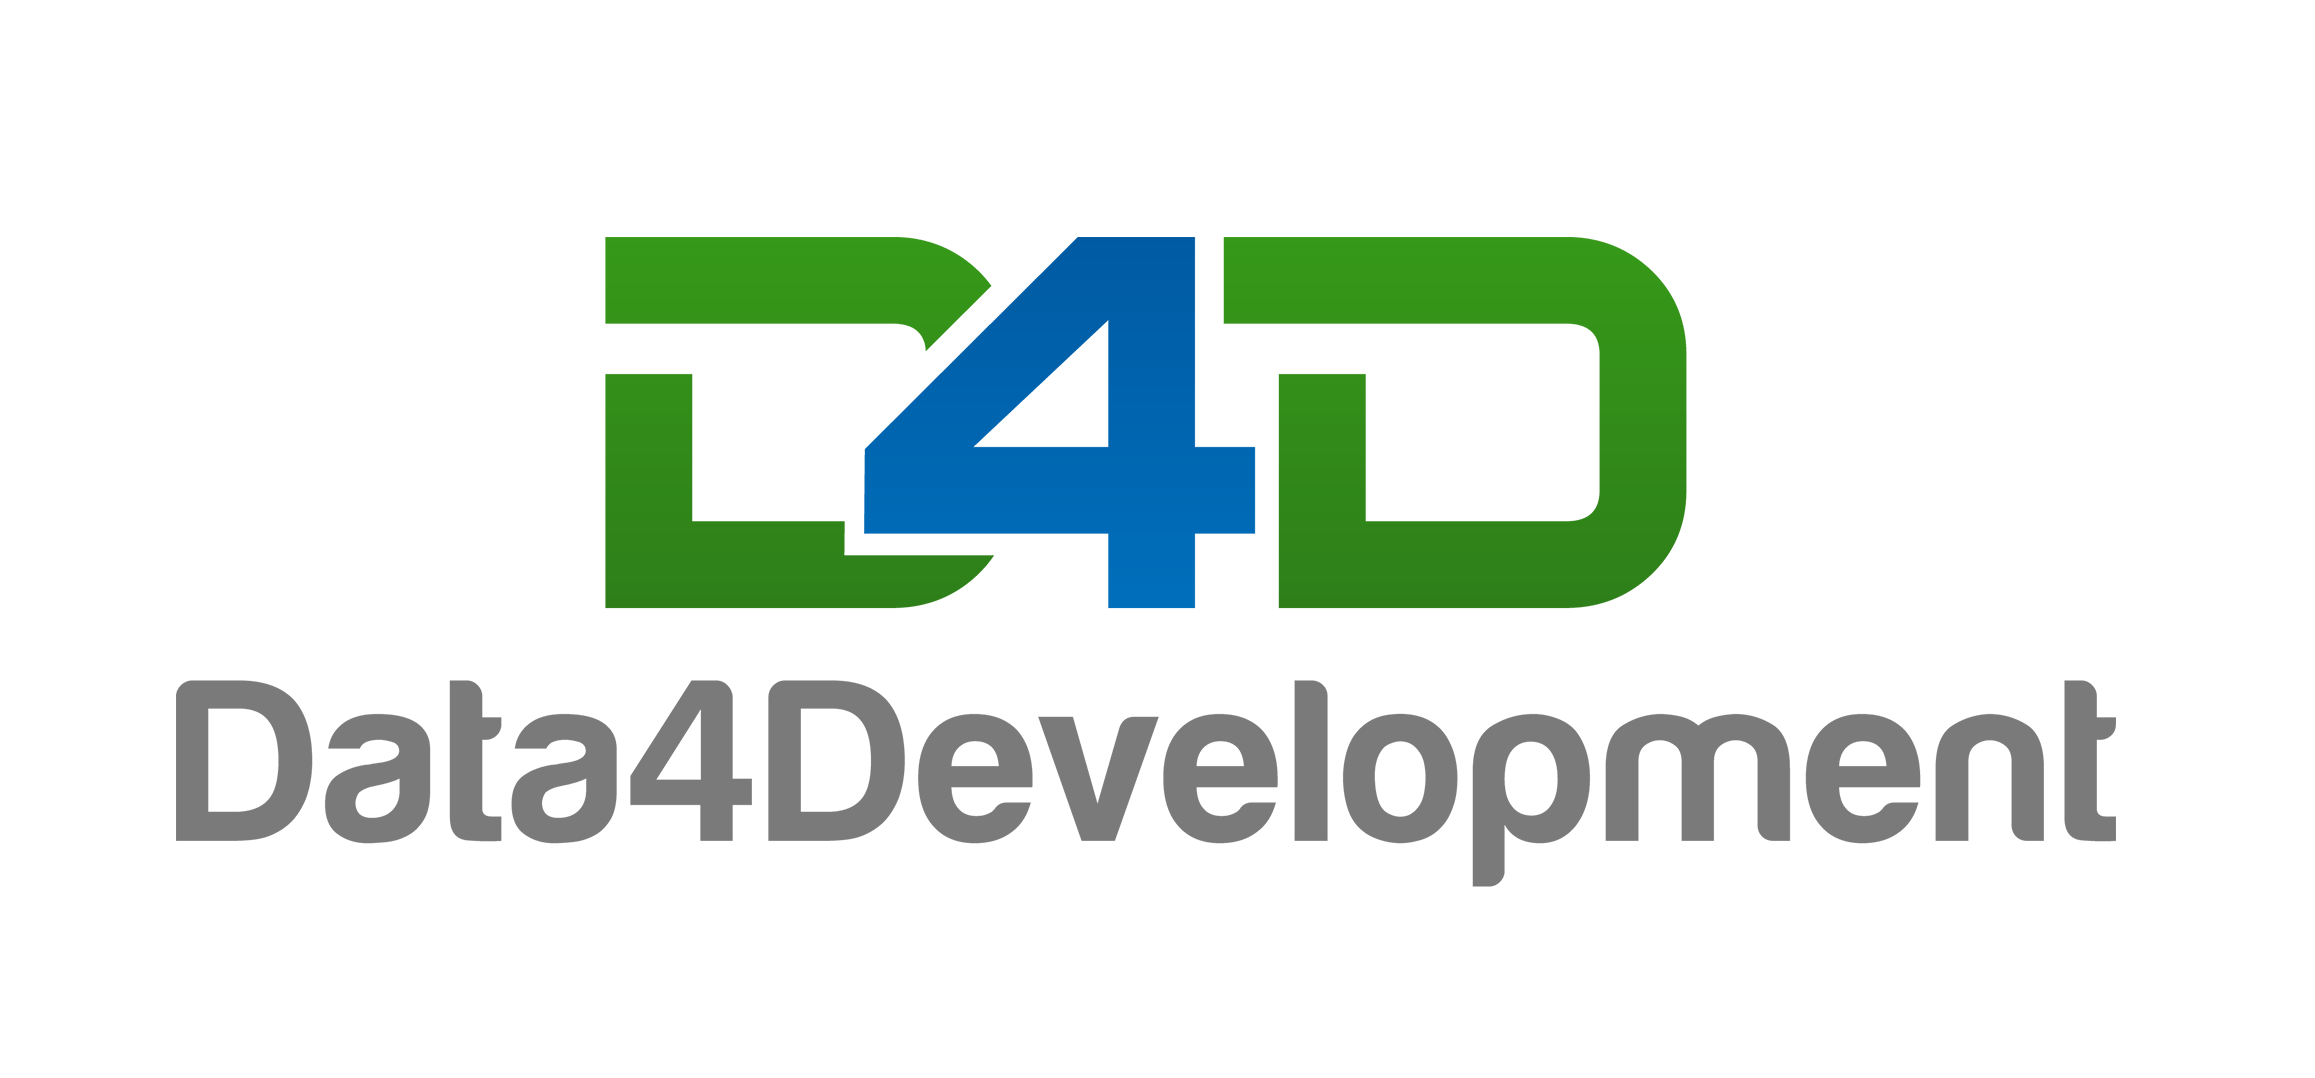 D4D Logo - Data4Development - Information Management - Data4development.nl